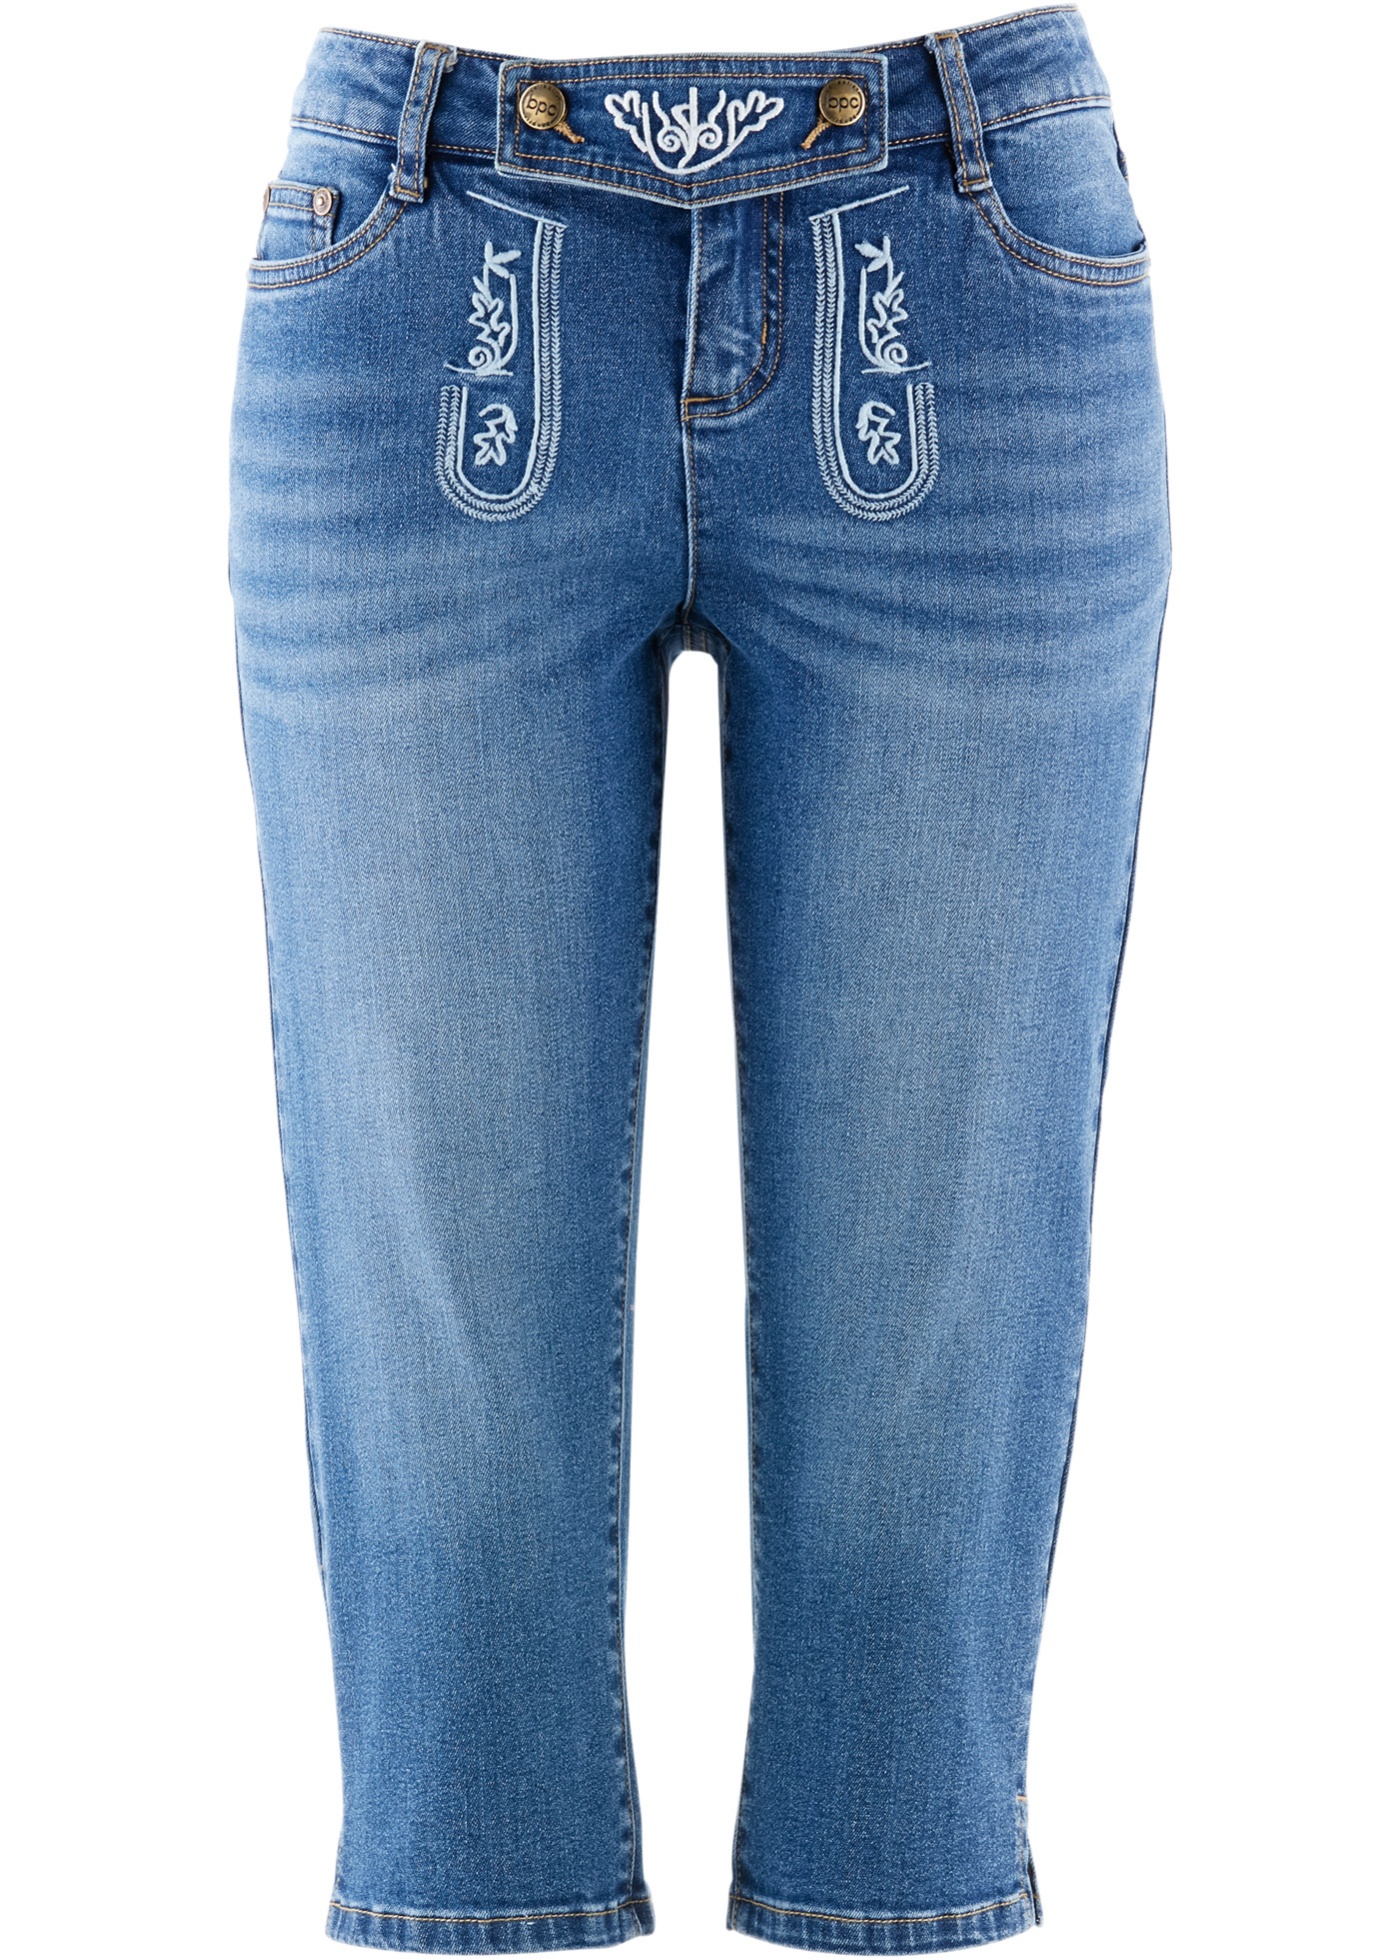 Folkdräktsinspirerade jeans med broderi, 3/4-längd